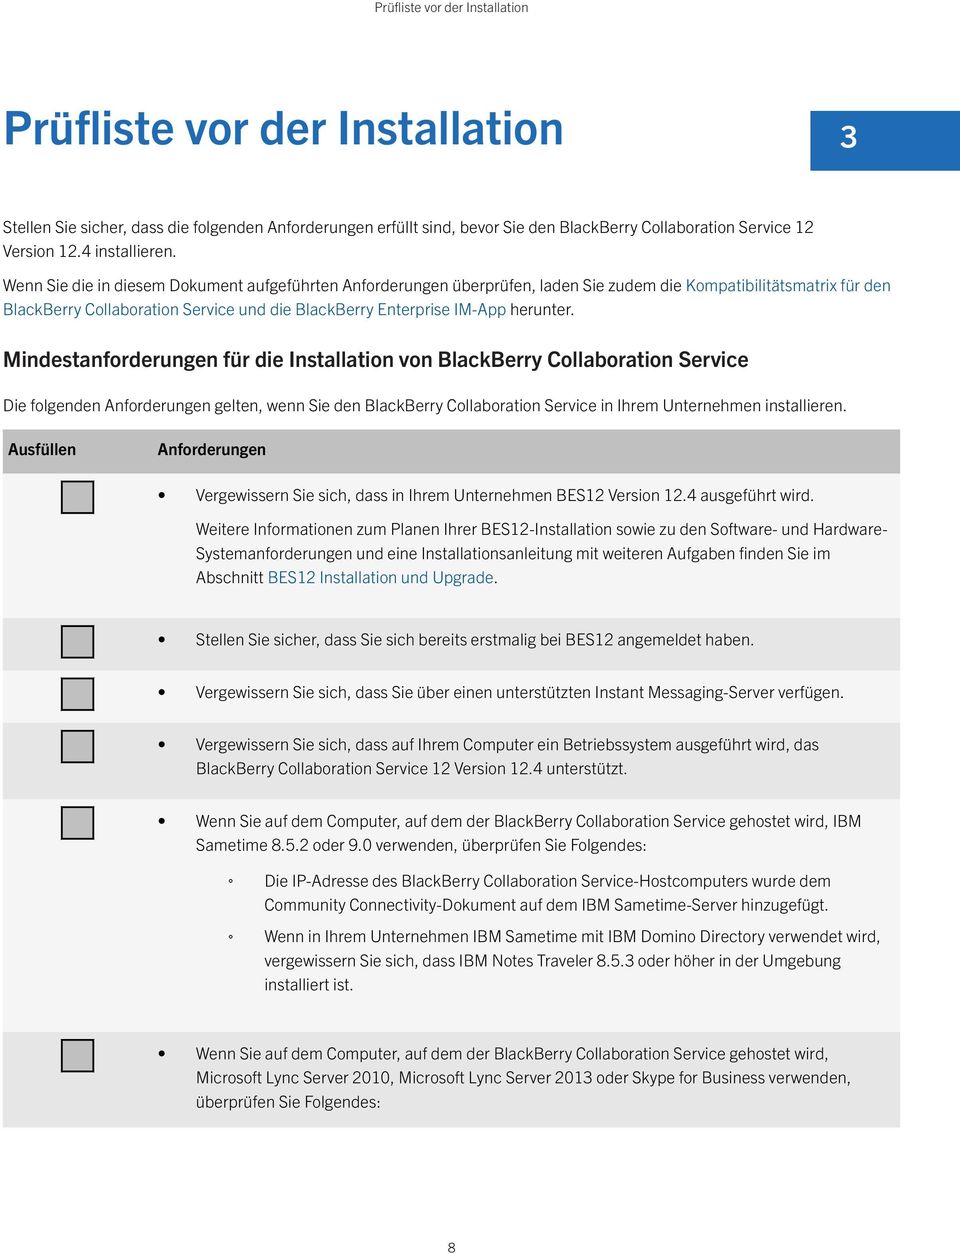 Wenn Sie die in diesem Dokument aufgeführten Anforderungen überprüfen, laden Sie zudem die Kompatibilitätsmatrix für den BlackBerry Collaboration Service und die BlackBerry Enterprise IM-App herunter.